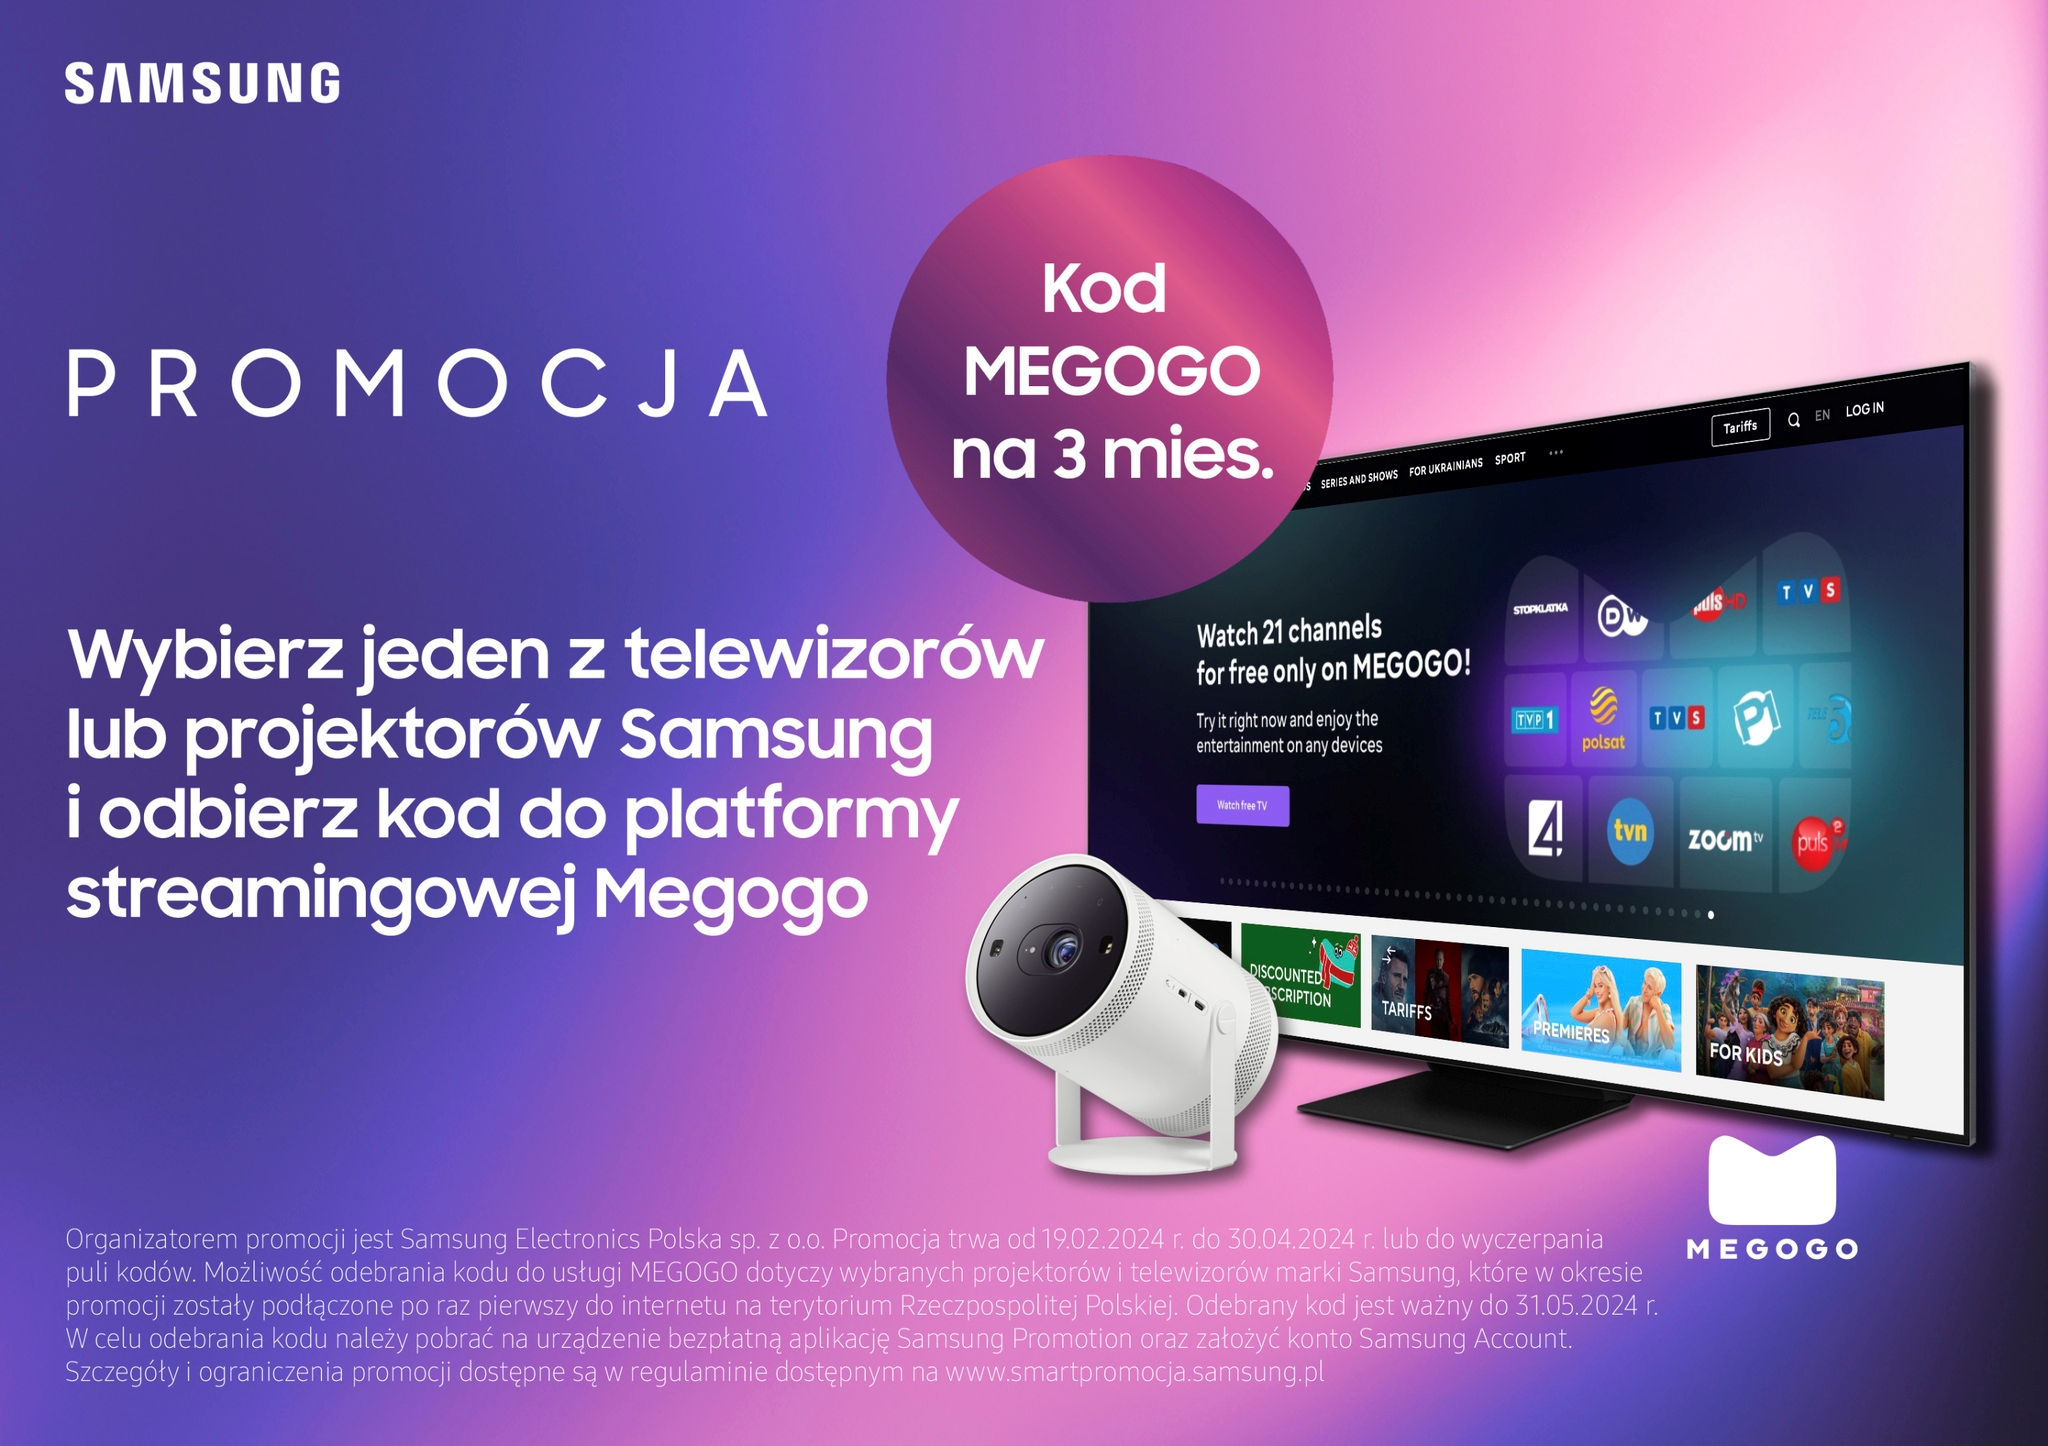 3-miesięczny darmowy dostęp do platformy MEGOGO (źródło: Samsung)